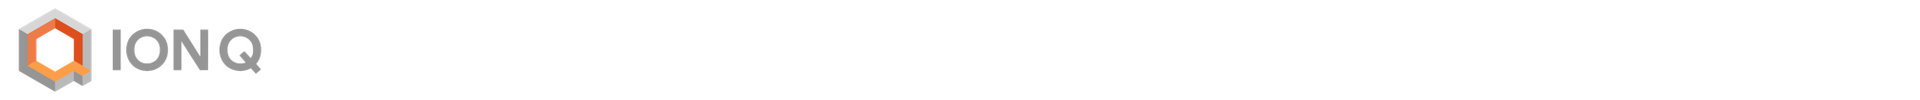 alt_text=logo von IonQ-2